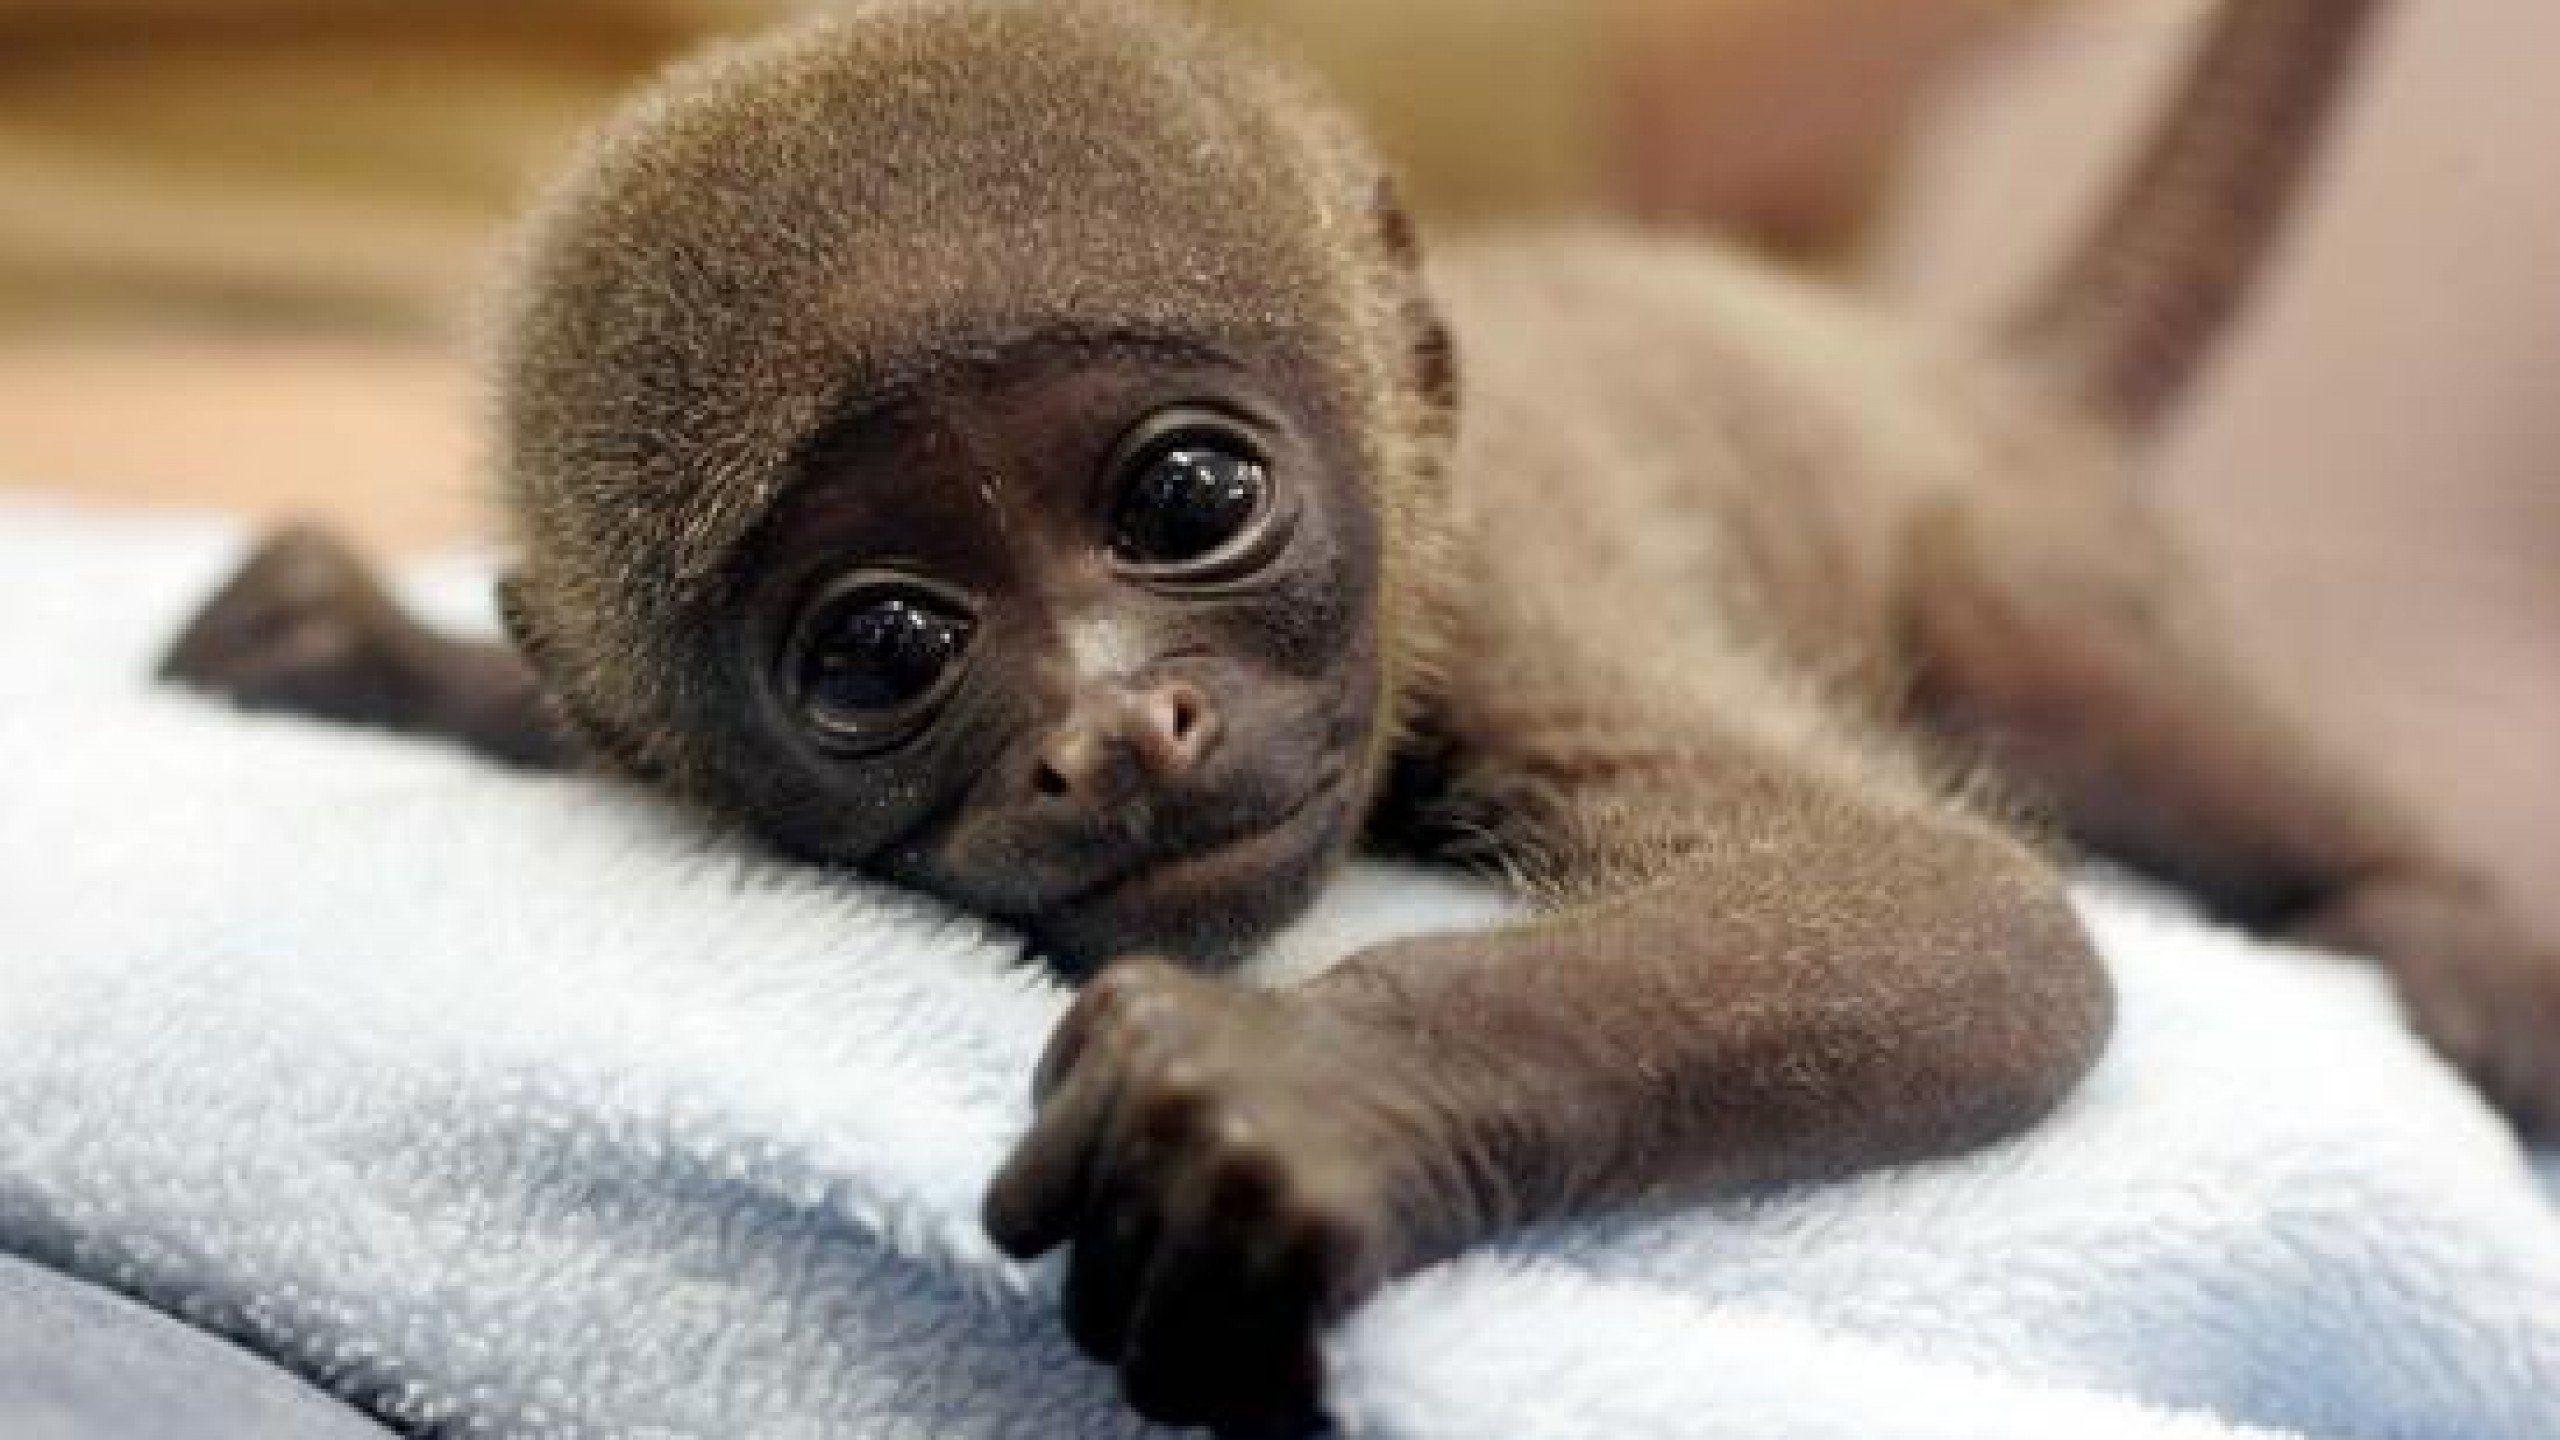 Cute Baby Monkey